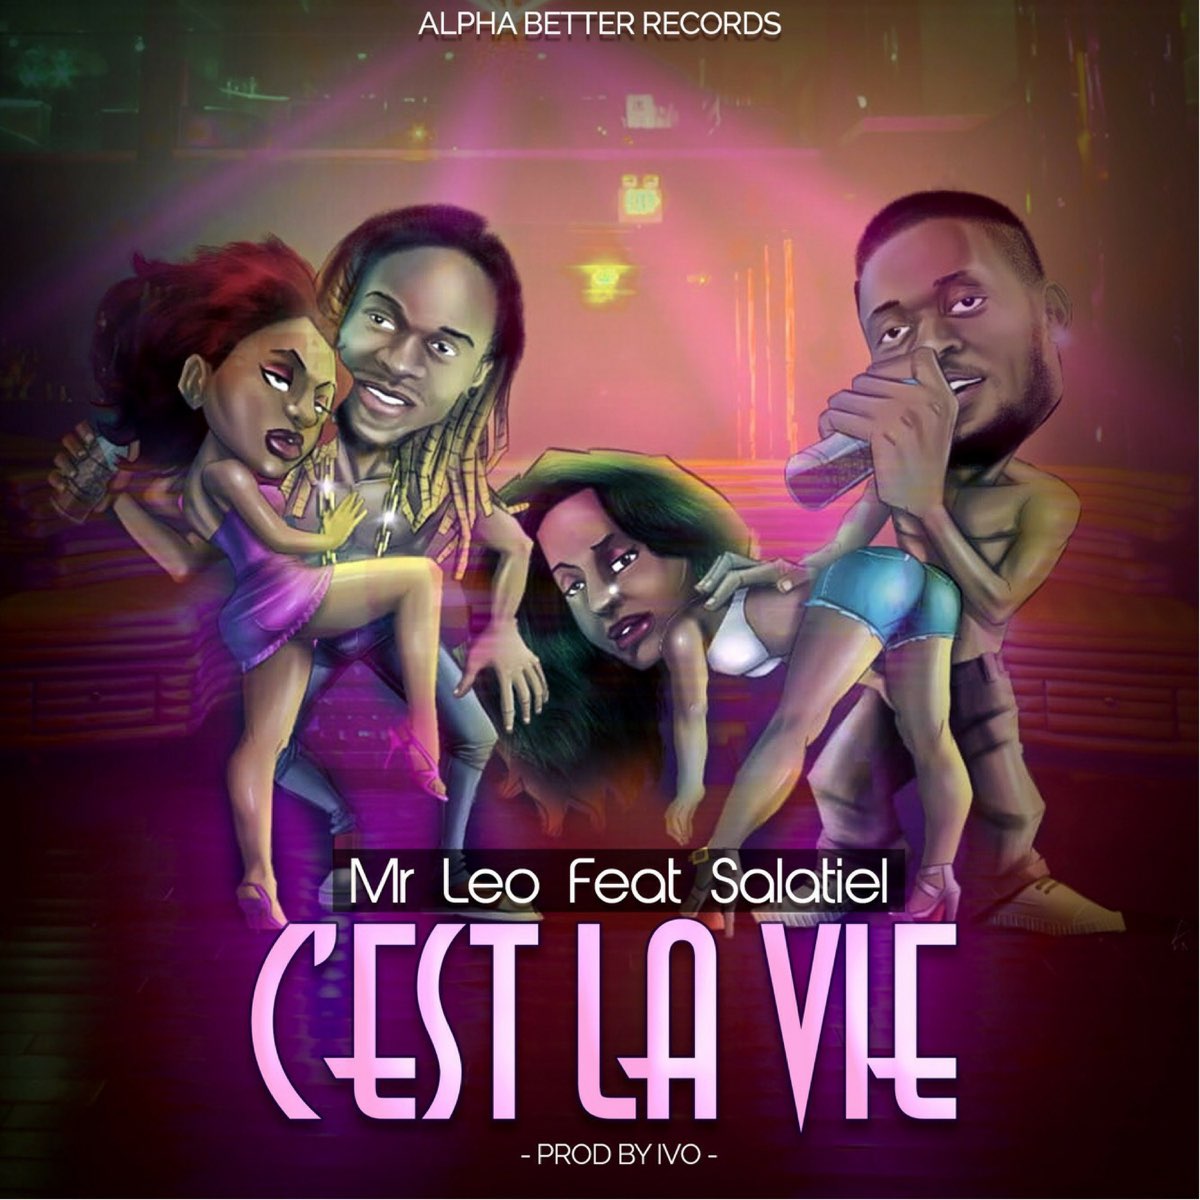 C'est la vie (feat. Salatiel) - Single by Mr Leo on Apple Music